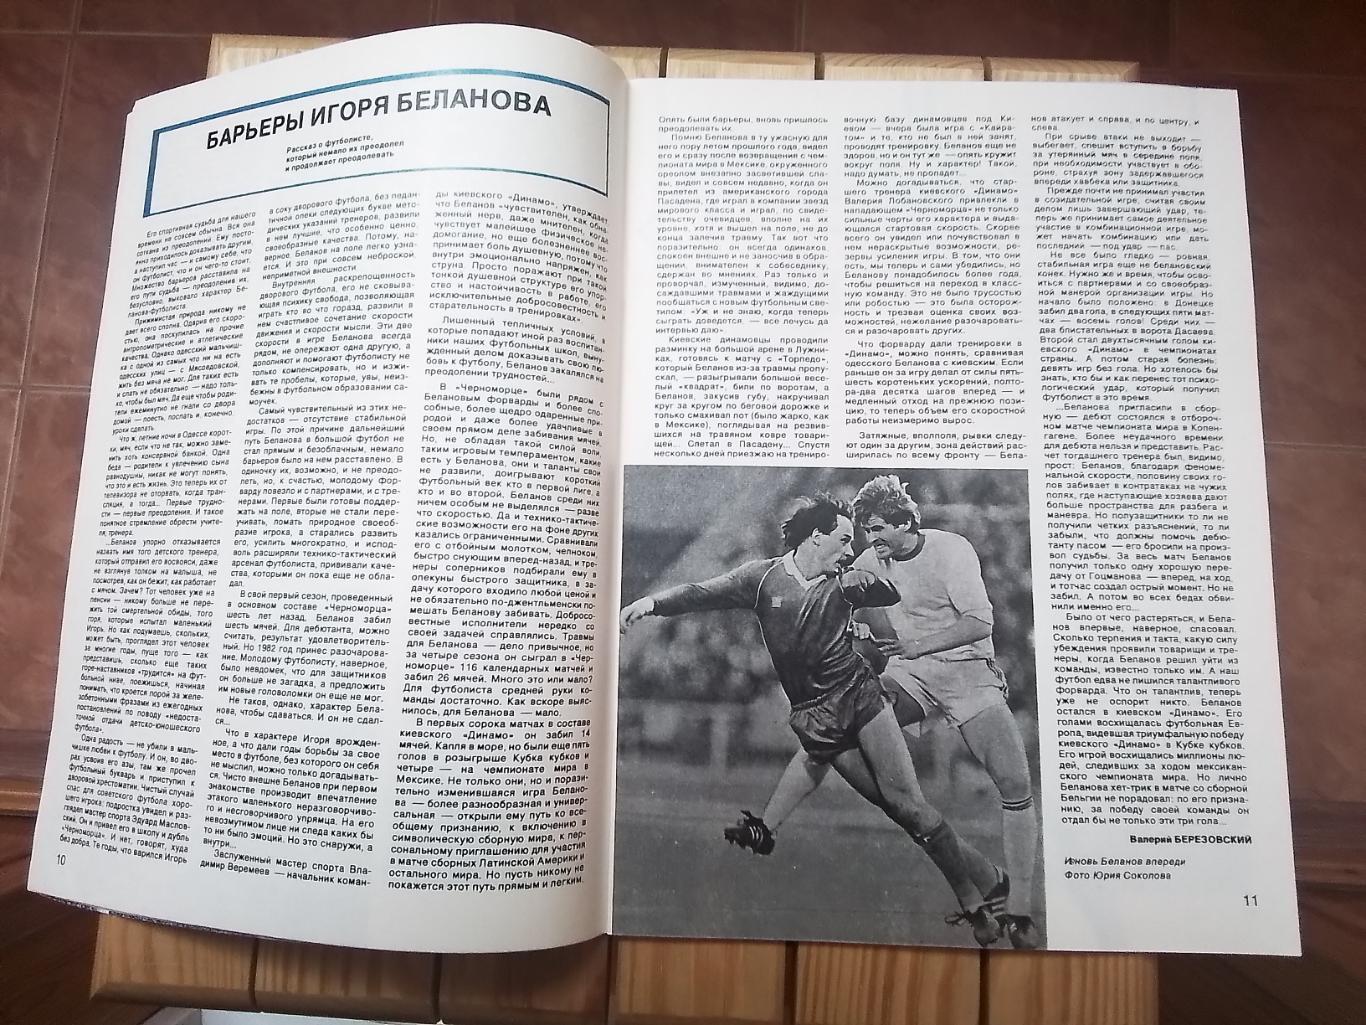 Журнал Спортивные игры N 10 1986 Беланов Динамо Киев 6